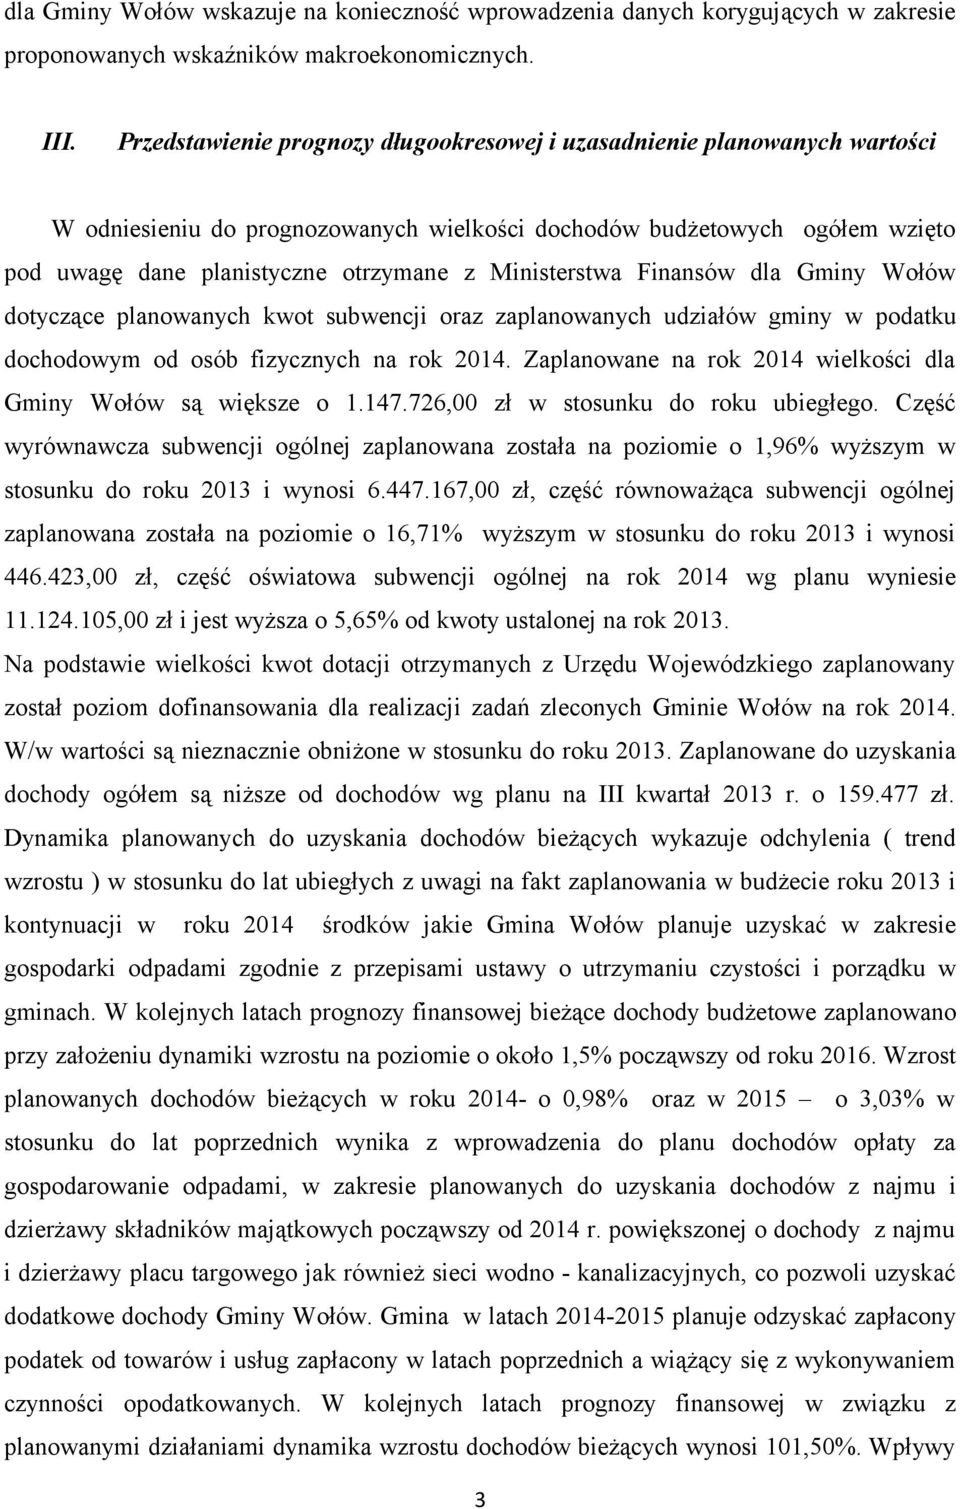 Ministerstwa Finansów dla Gminy Wołów dotyczące planowanych kwot subwencji oraz zaplanowanych udziałów gminy w podatku dochodowym od osób fizycznych na rok 2014.